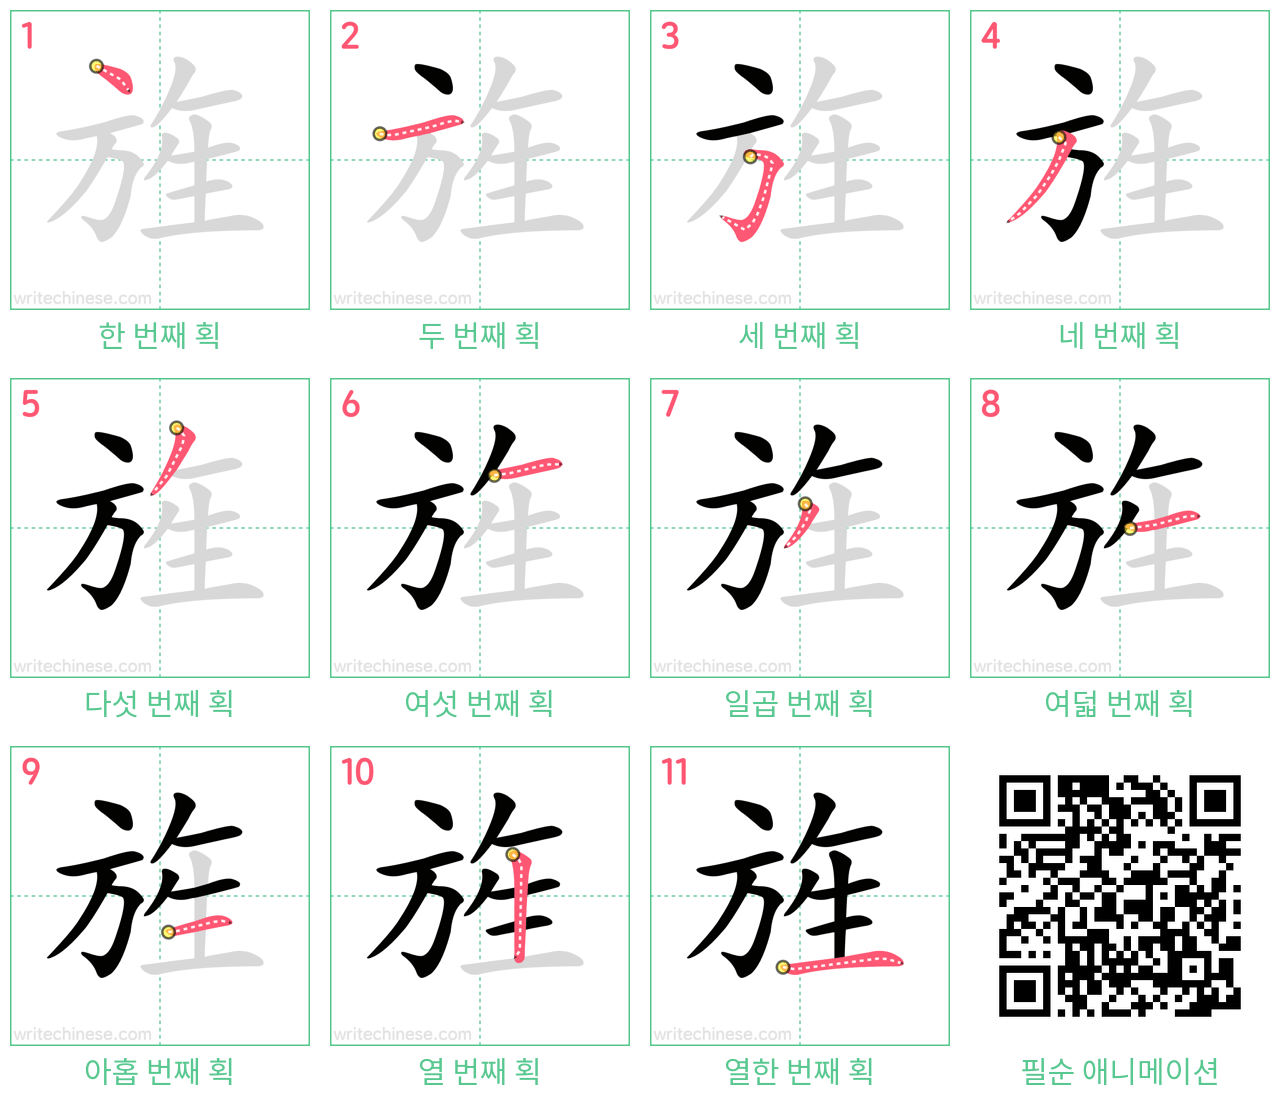 旌 step-by-step stroke order diagrams